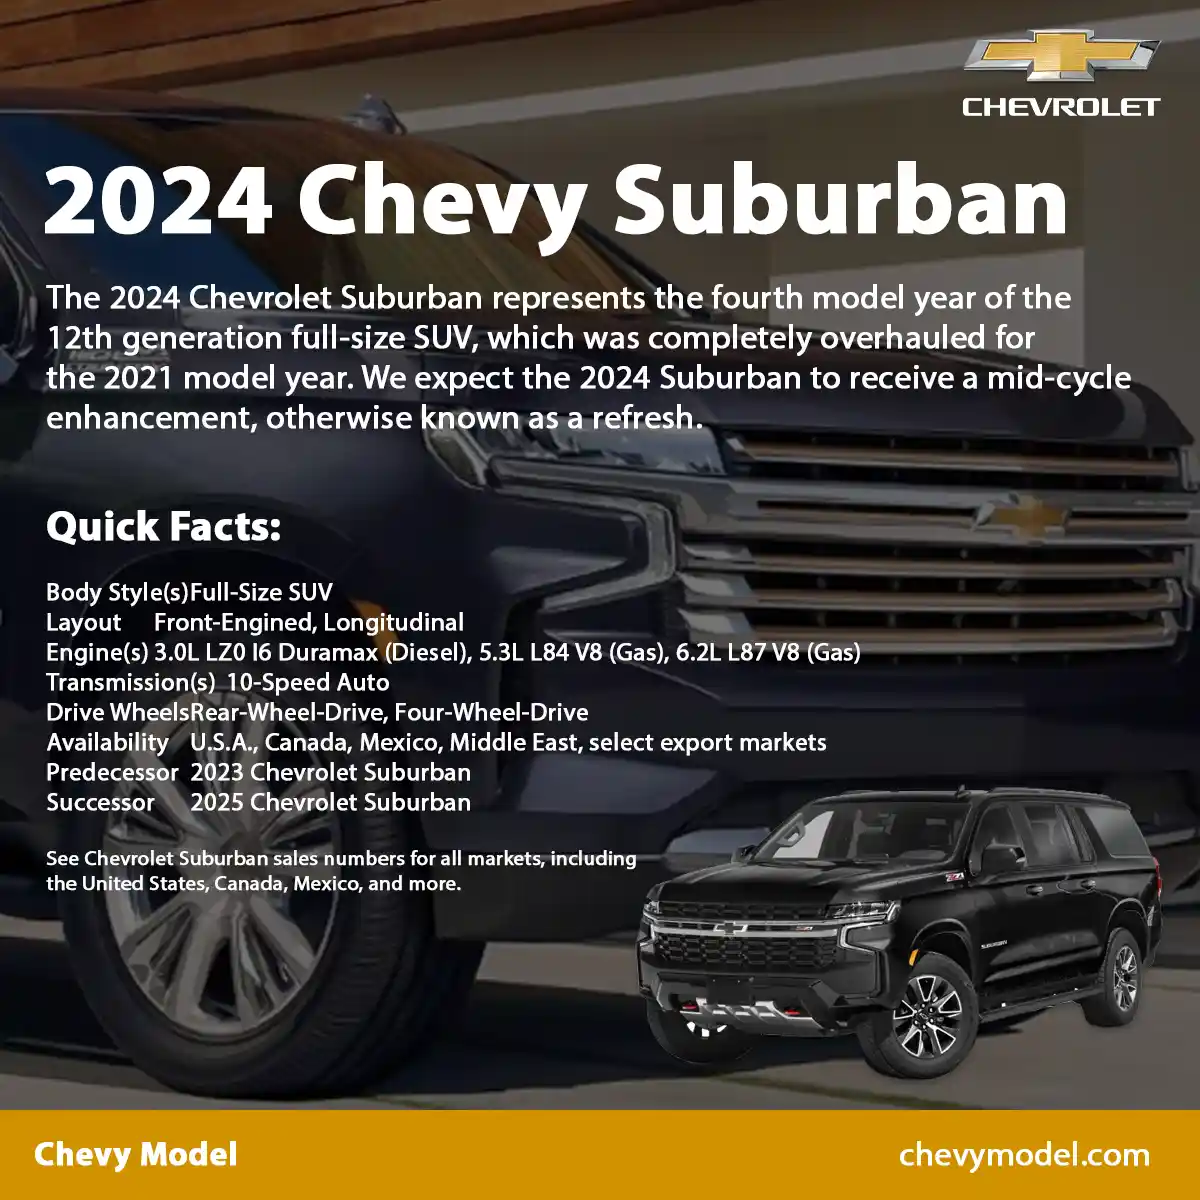 2024 Chevy Suburban Infographic